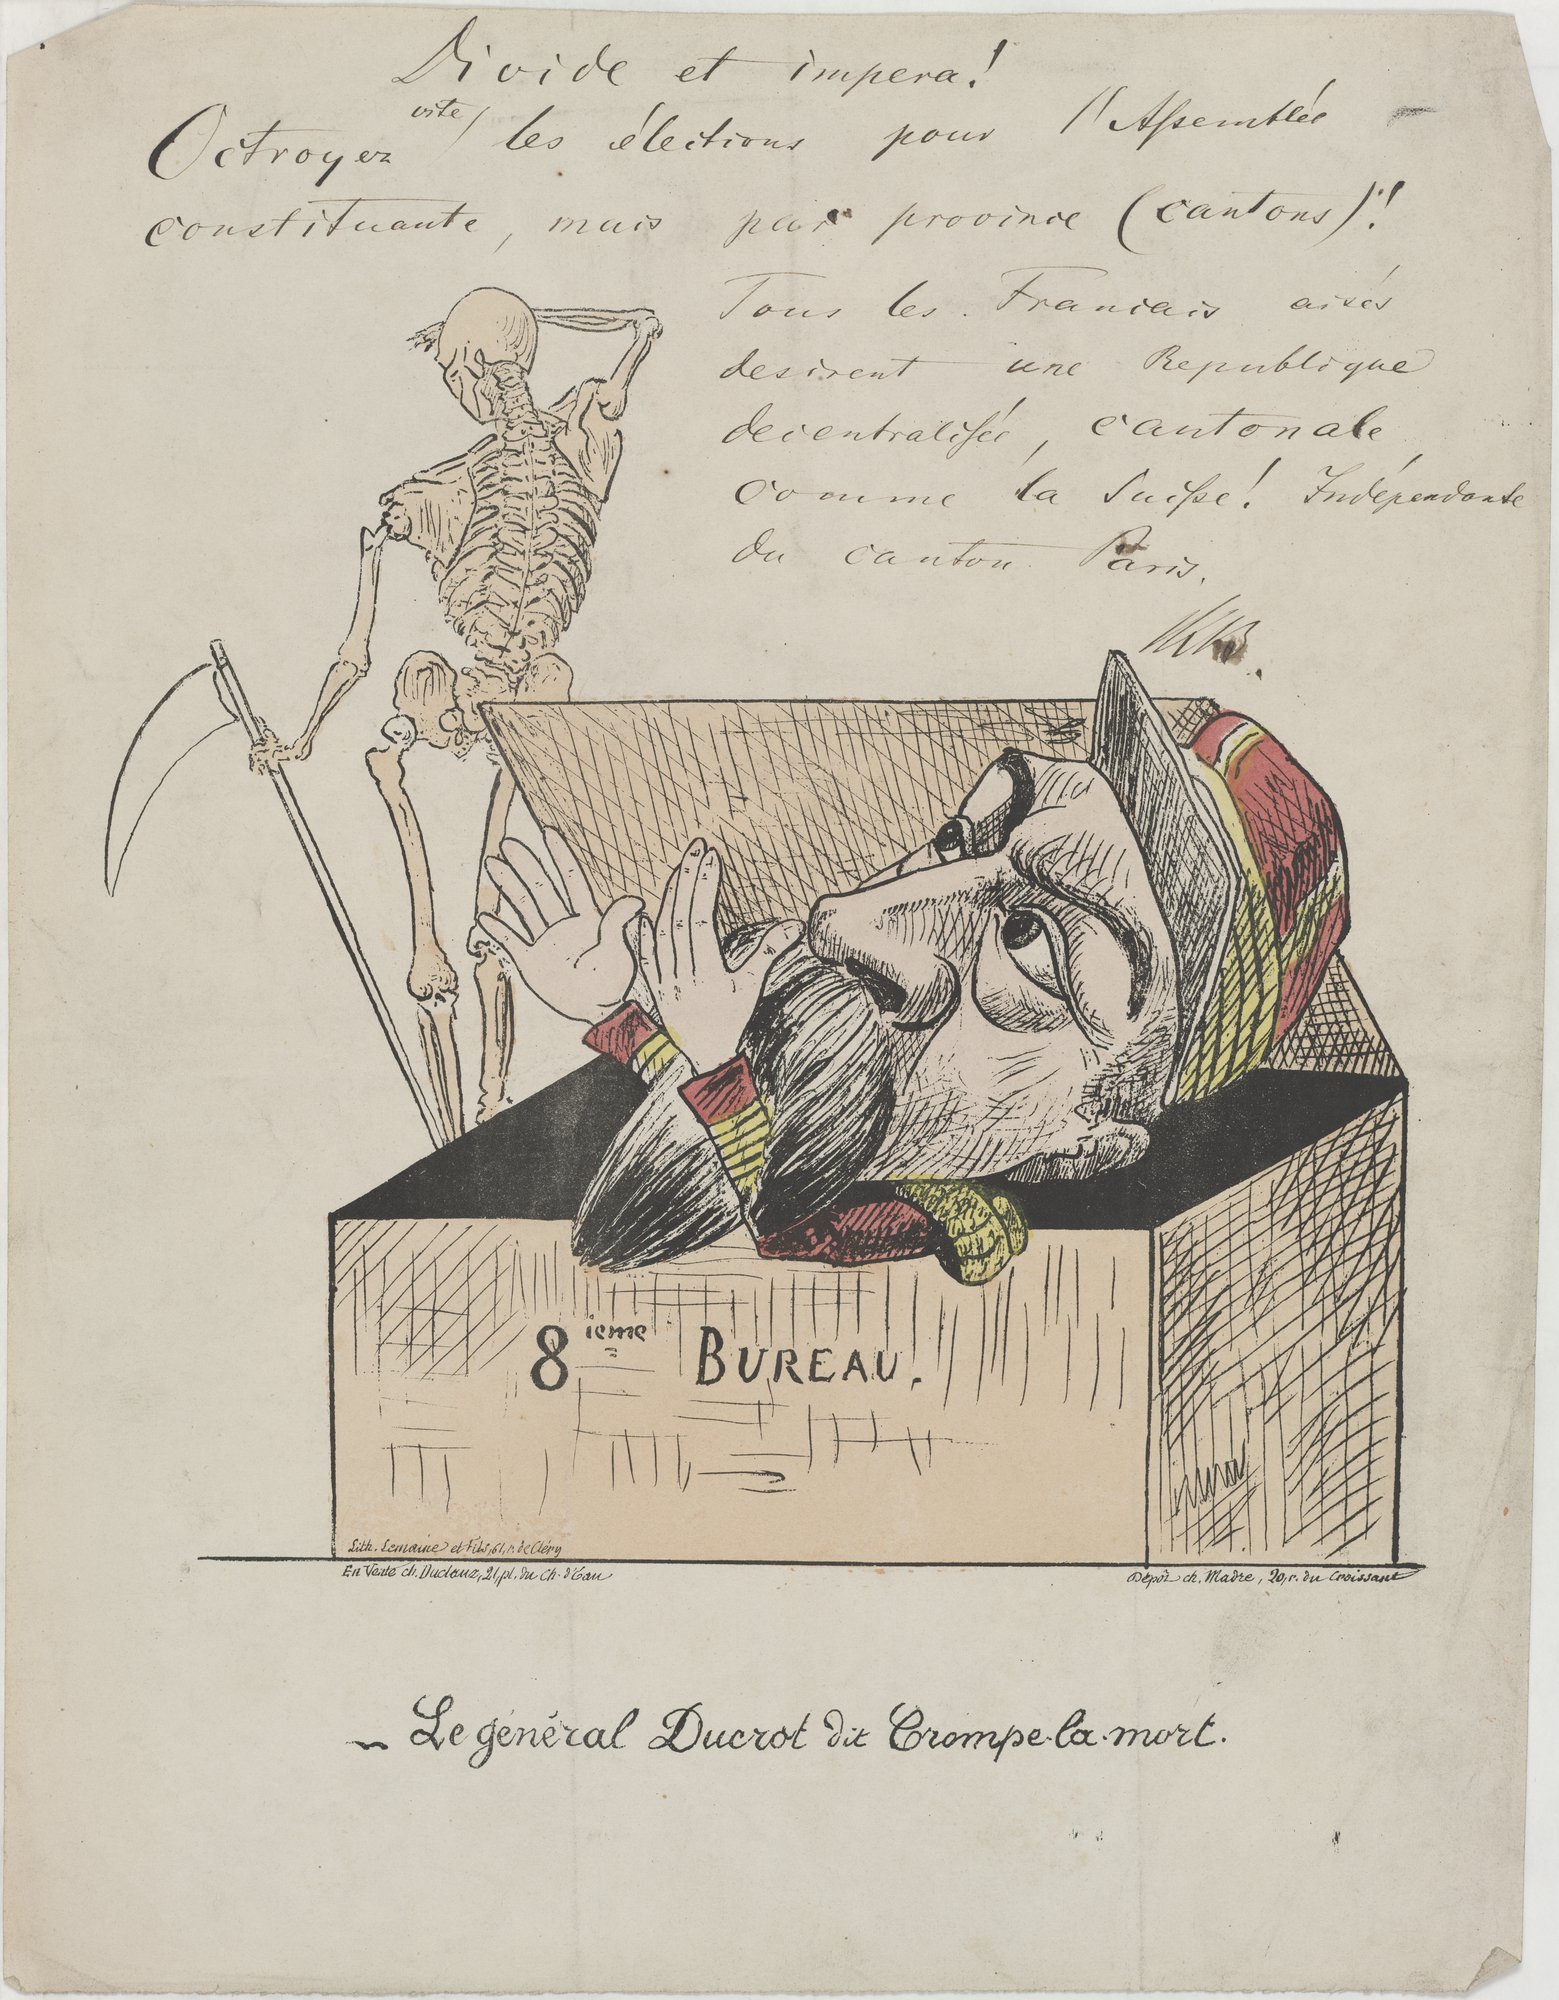 Le genéral Ducrot dit Trompe la mort. (Kulturstiftung Sachsen-Anhalt Public Domain Mark)